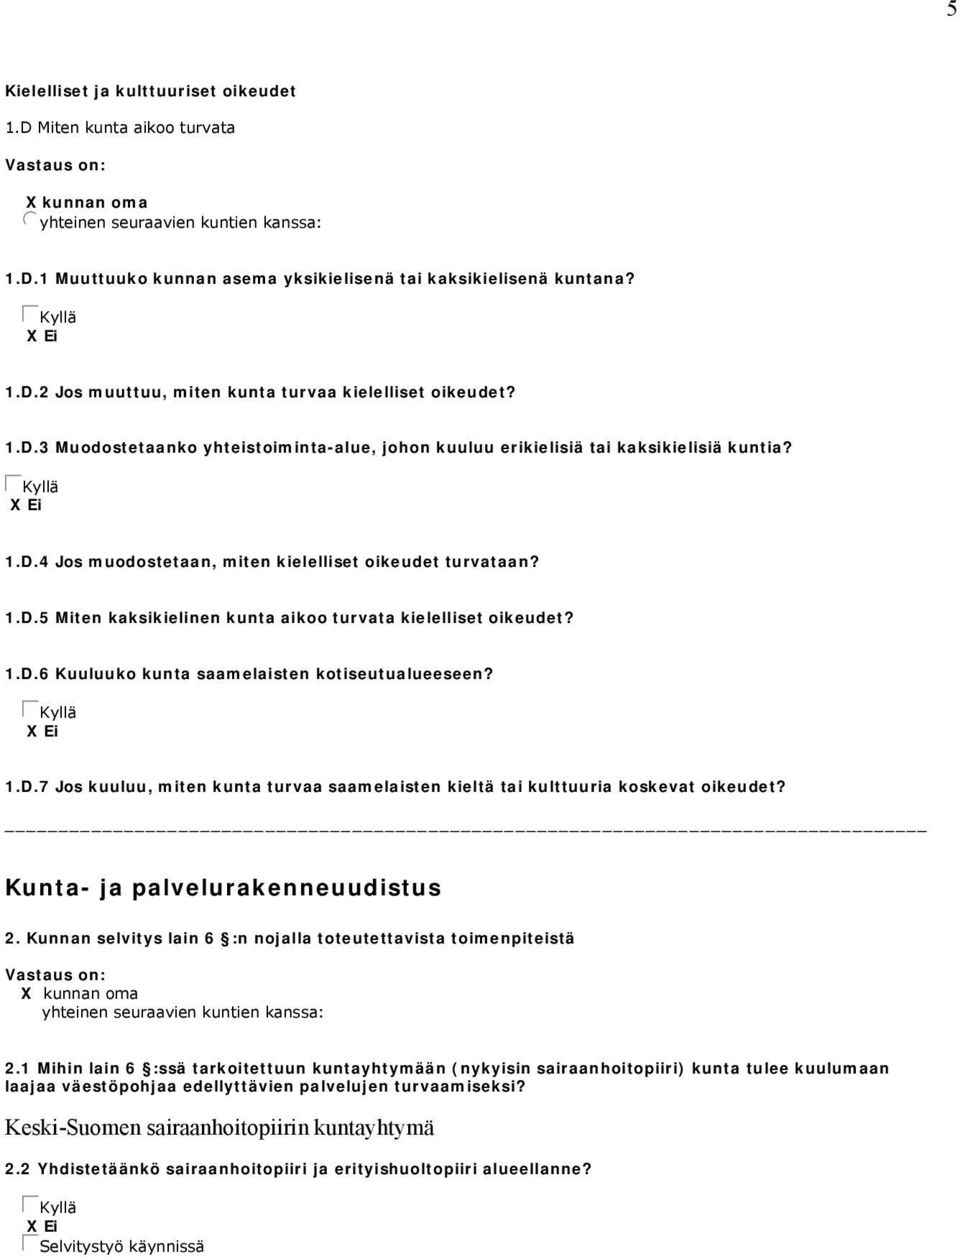 1.D.5 Miten kaksikielinen kunta aikoo turvata kielelliset oikeudet? 1.D.6 Kuuluuko kunta saamelaisten kotiseutualueeseen? gckyllä X Ei 1.D.7 Jos kuuluu, miten kunta turvaa saamelaisten kieltä tai kulttuuria koskevat oikeudet?